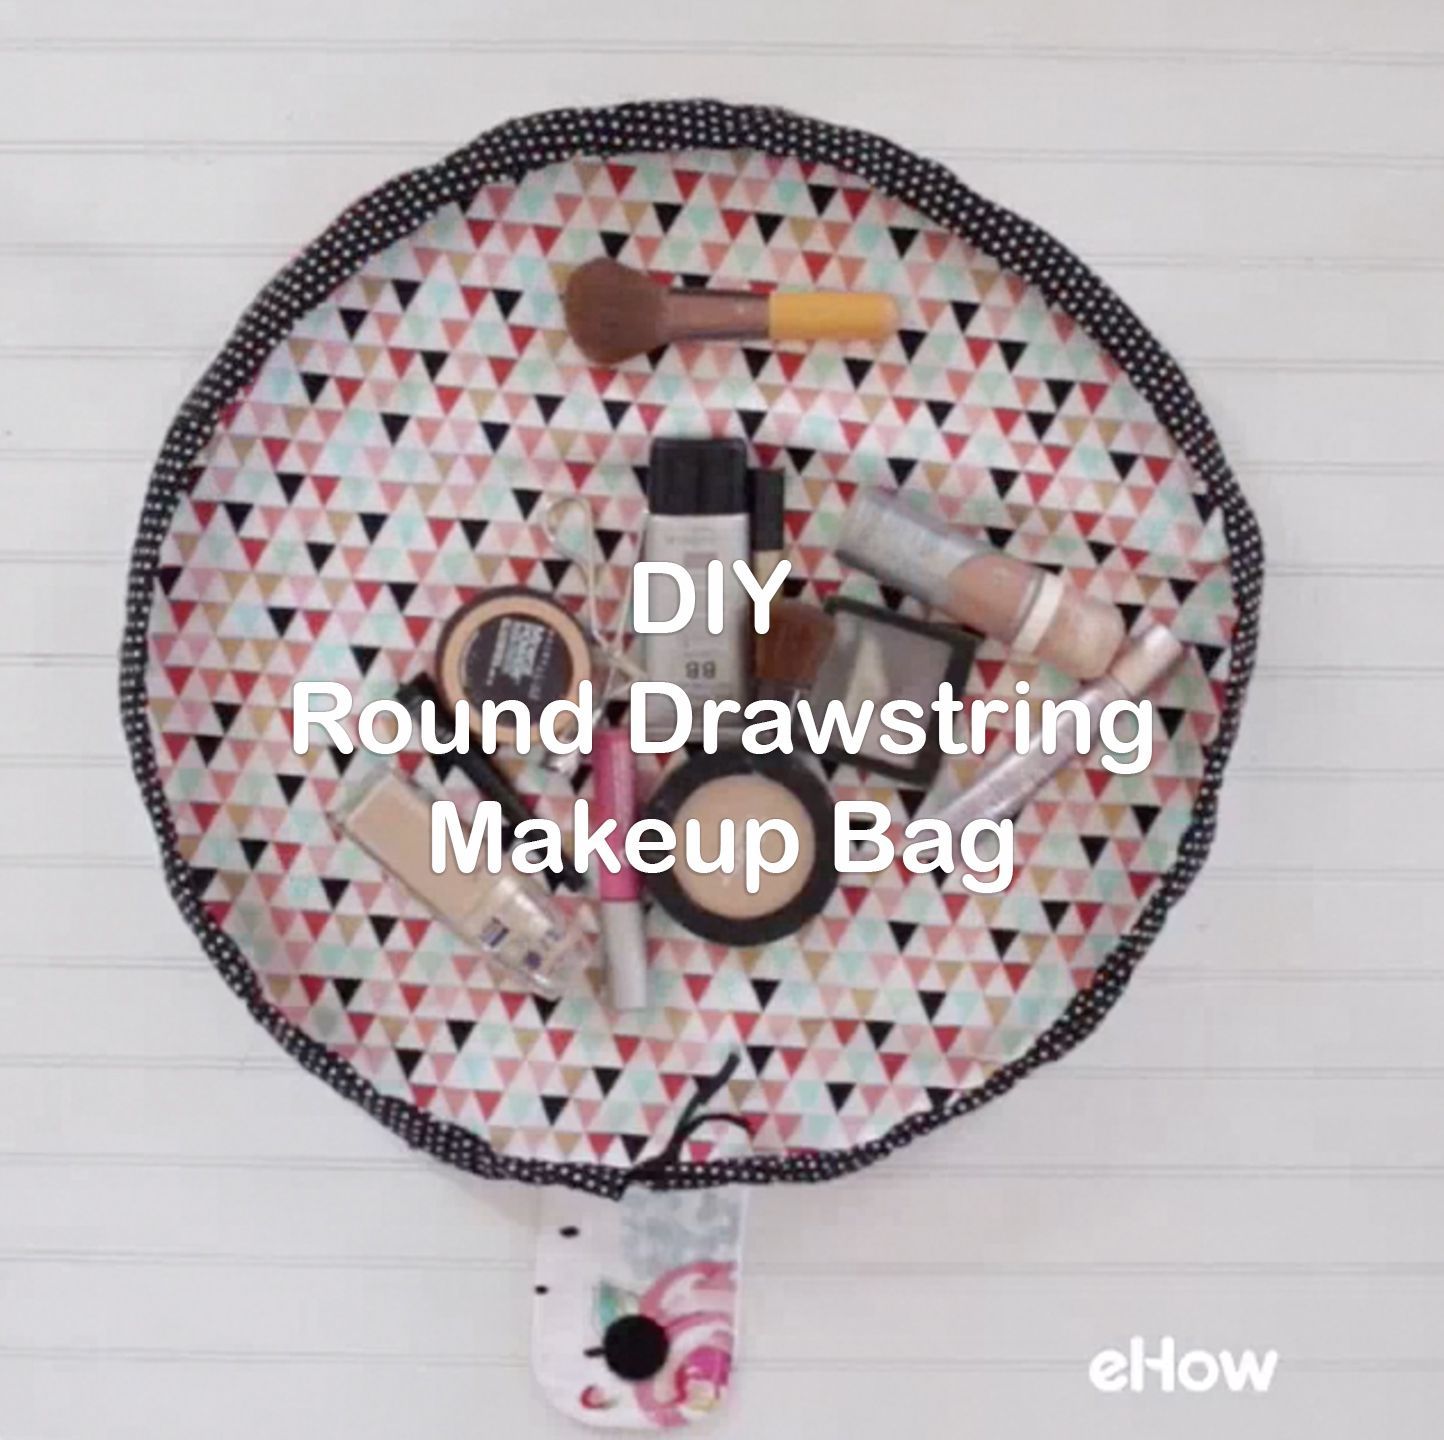 DIY Round Drawstring Makeup Bag -   19 diy Makeup bag ideas